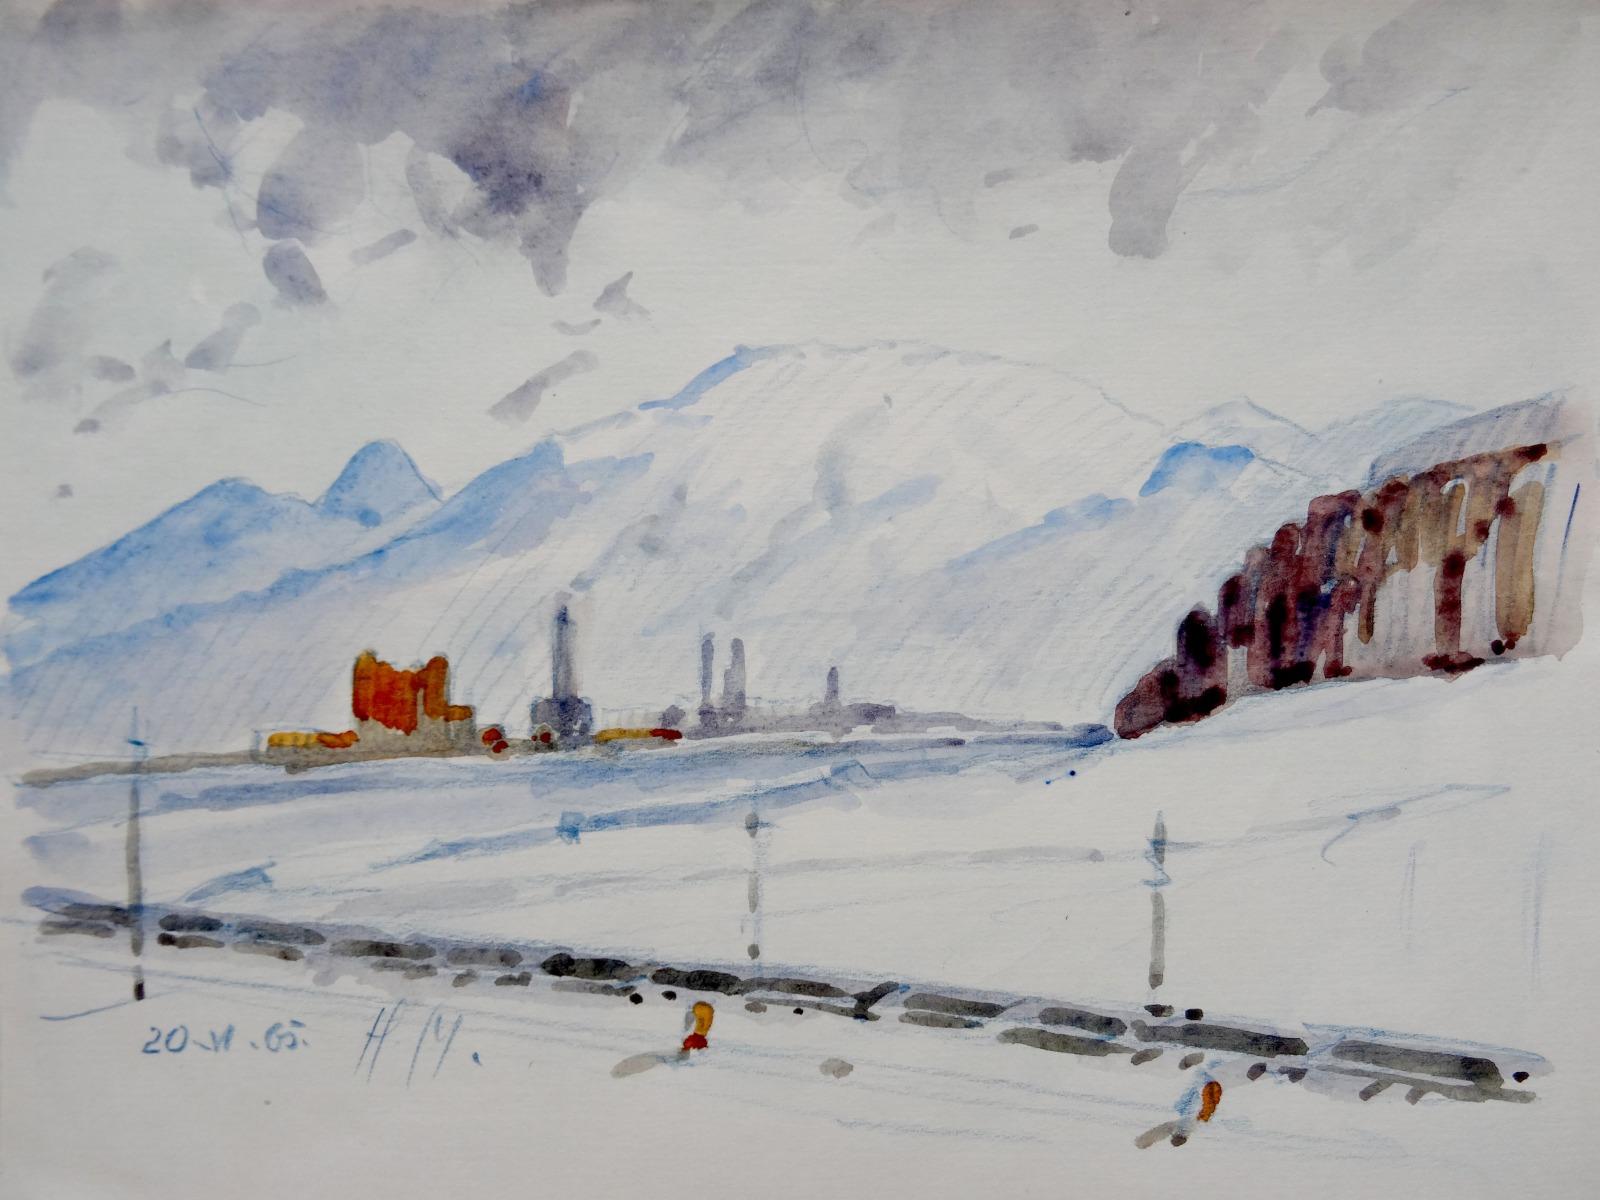 Herberts Mangolds Landscape Art - Winter landscape  1965, paper/watercolor., 20.5x27.5 cm